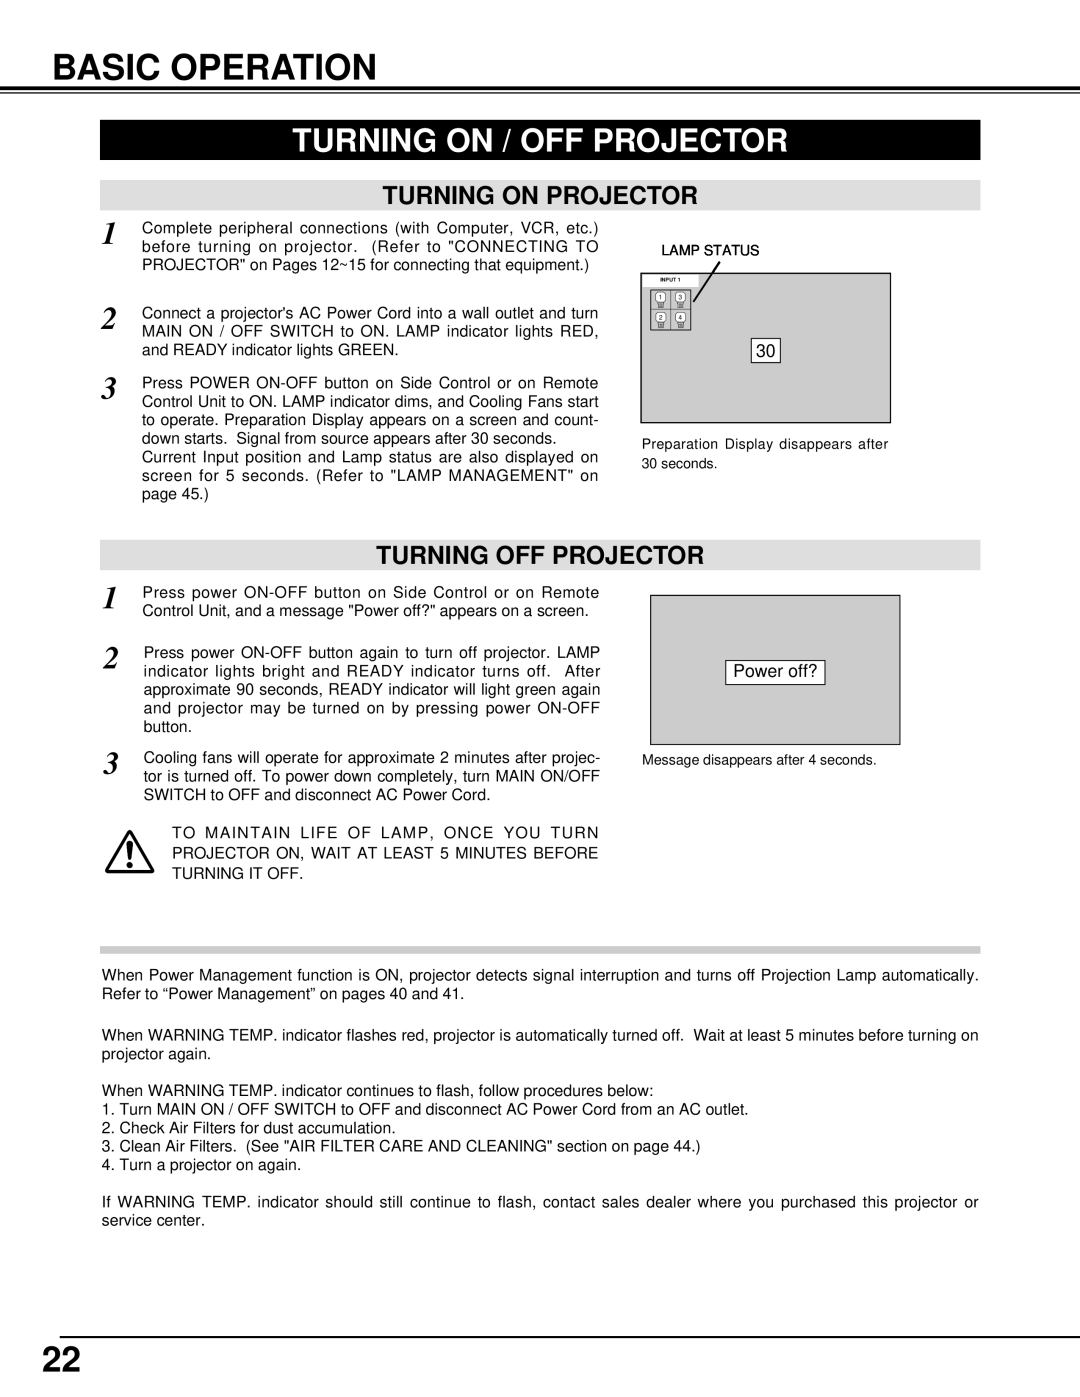 Eiki LC-UXT1 instruction manual Basic Operation, Turning On / Off Projector, Turning On Projector, Turning Off Projector 